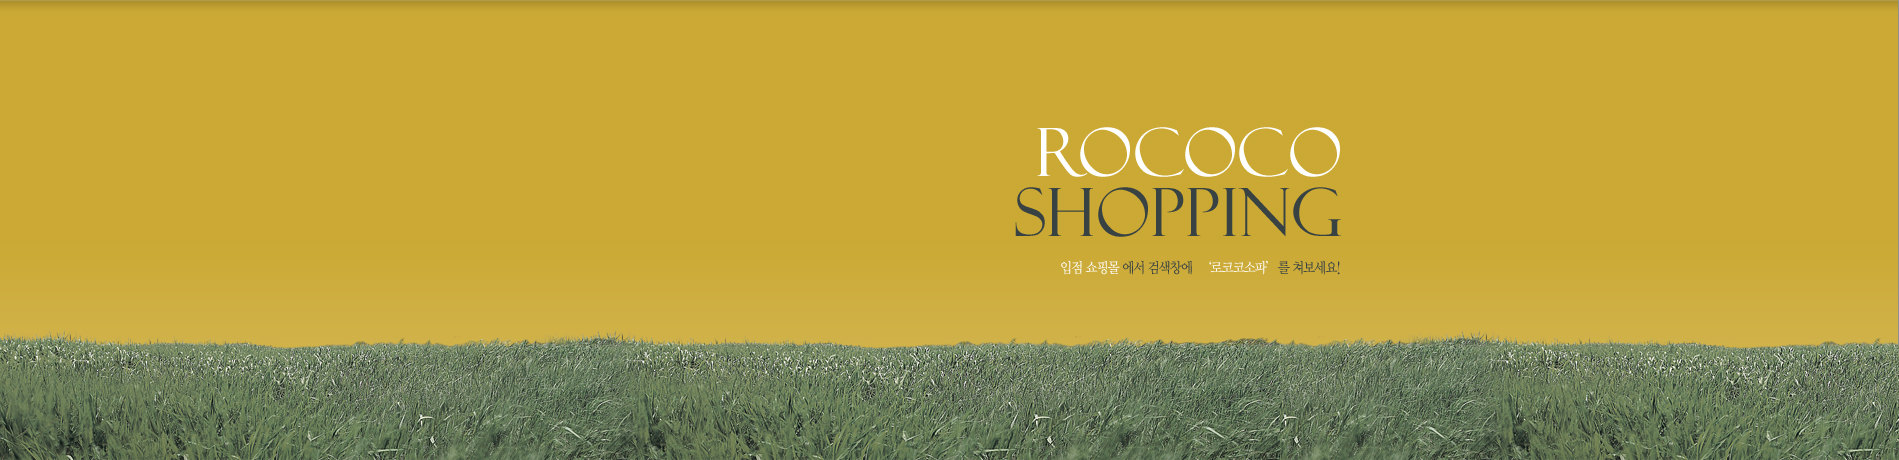 ROCOCO Shopping 입점 쇼핑몰 에서 검색창에  ‘로코코소파’를 쳐보세요!